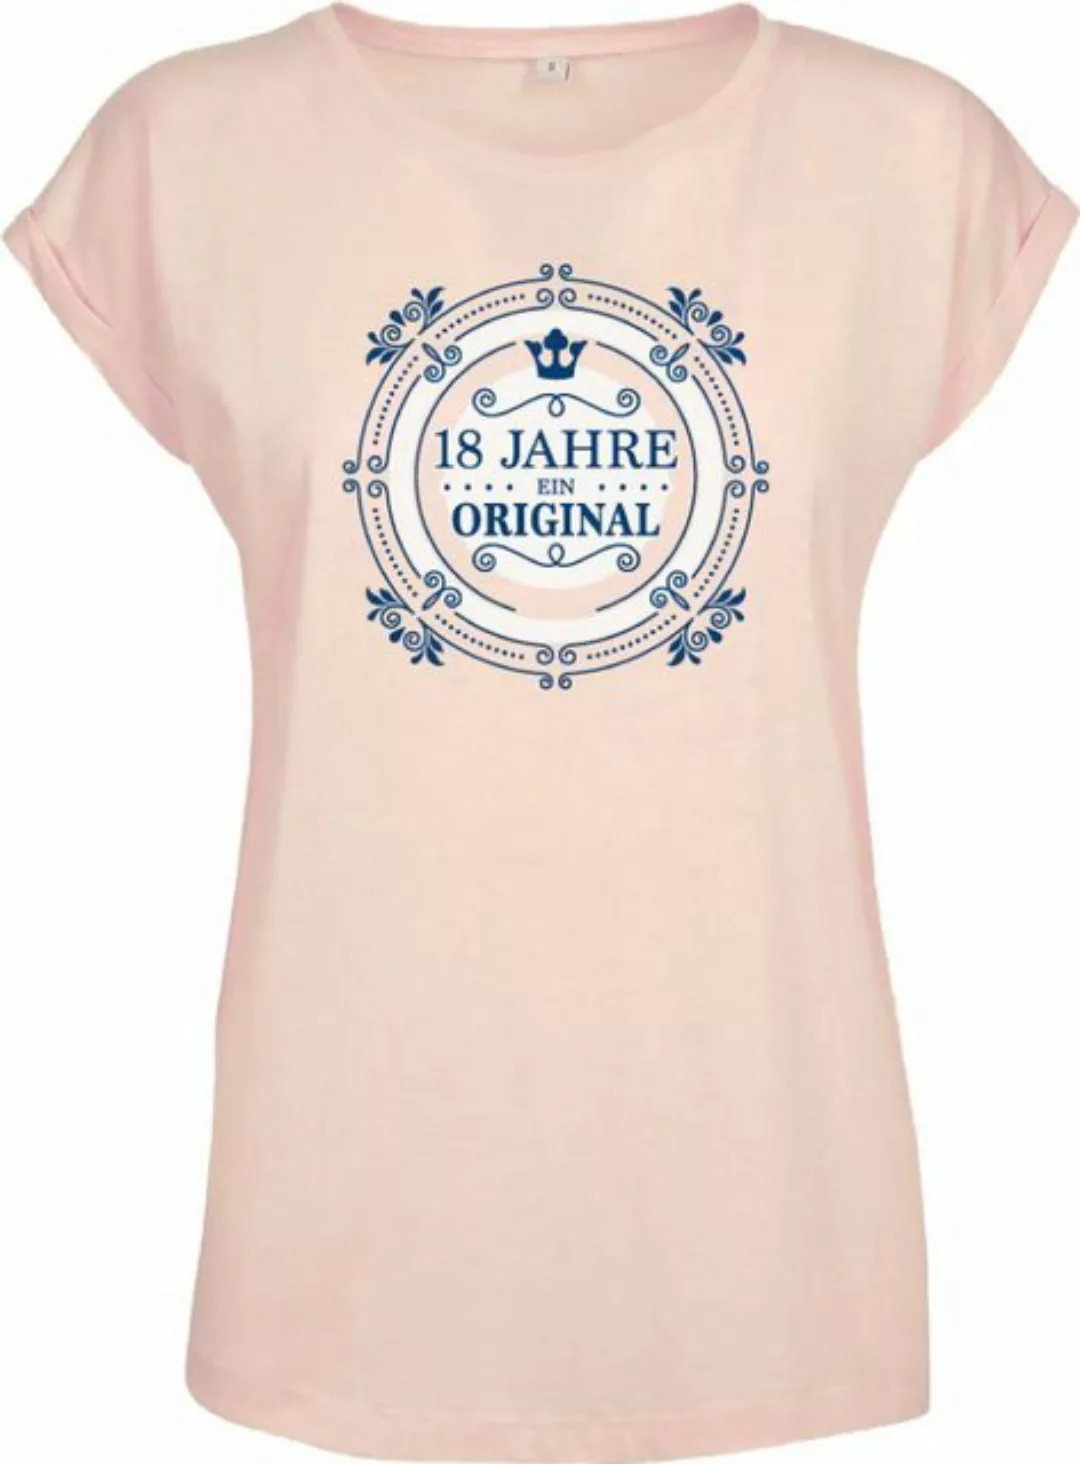 Baddery Print-Shirt Geburtstagsgeschenk für Frauen: "18 Jahre Ein Original" günstig online kaufen